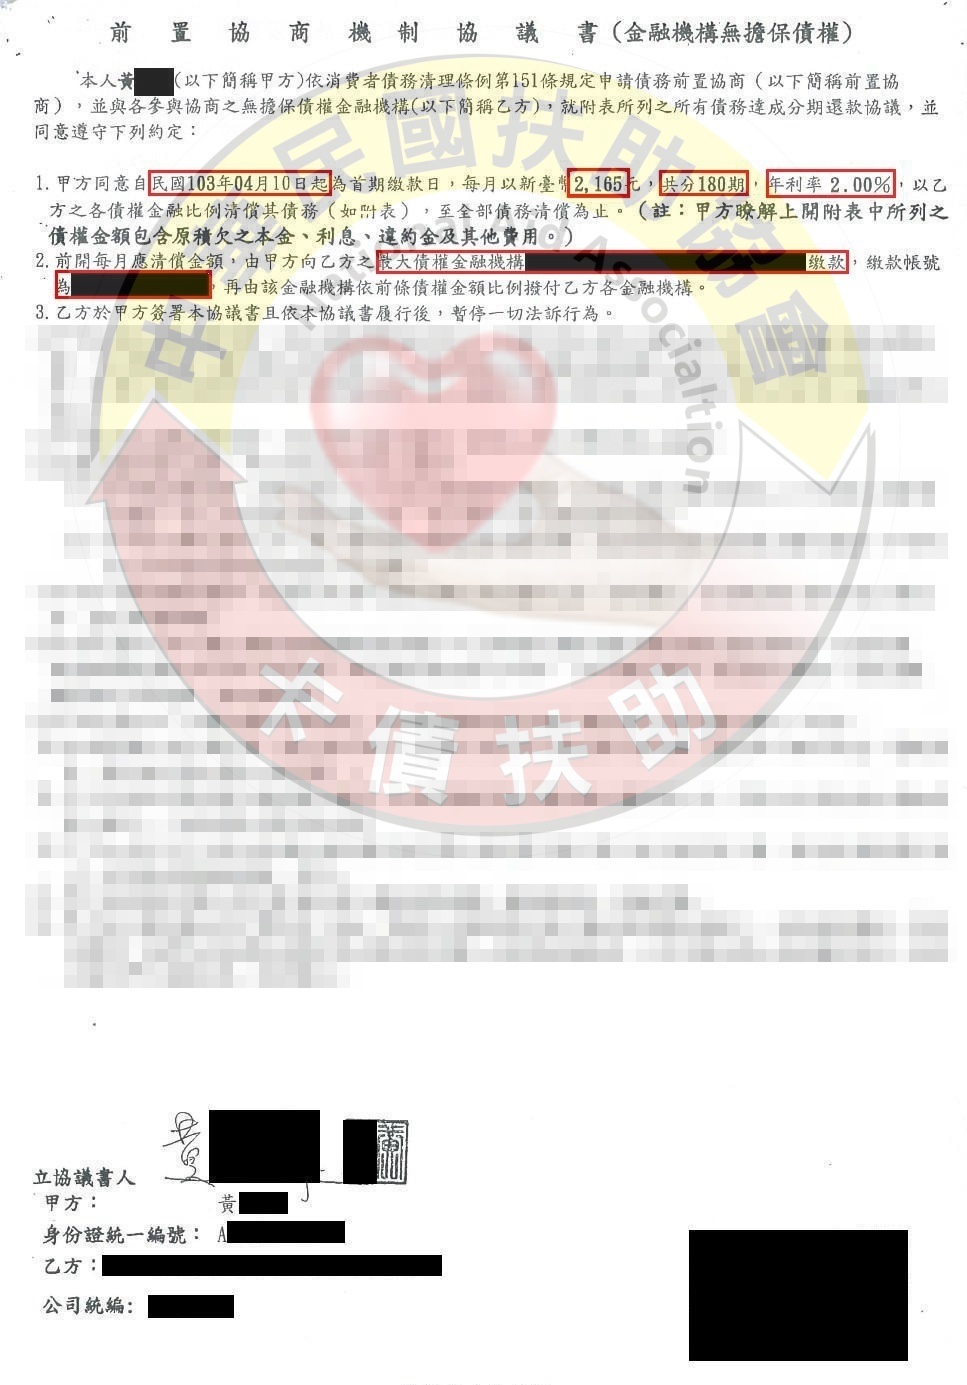 嘉義黃先生-協商成功依180期2%月付2,165元